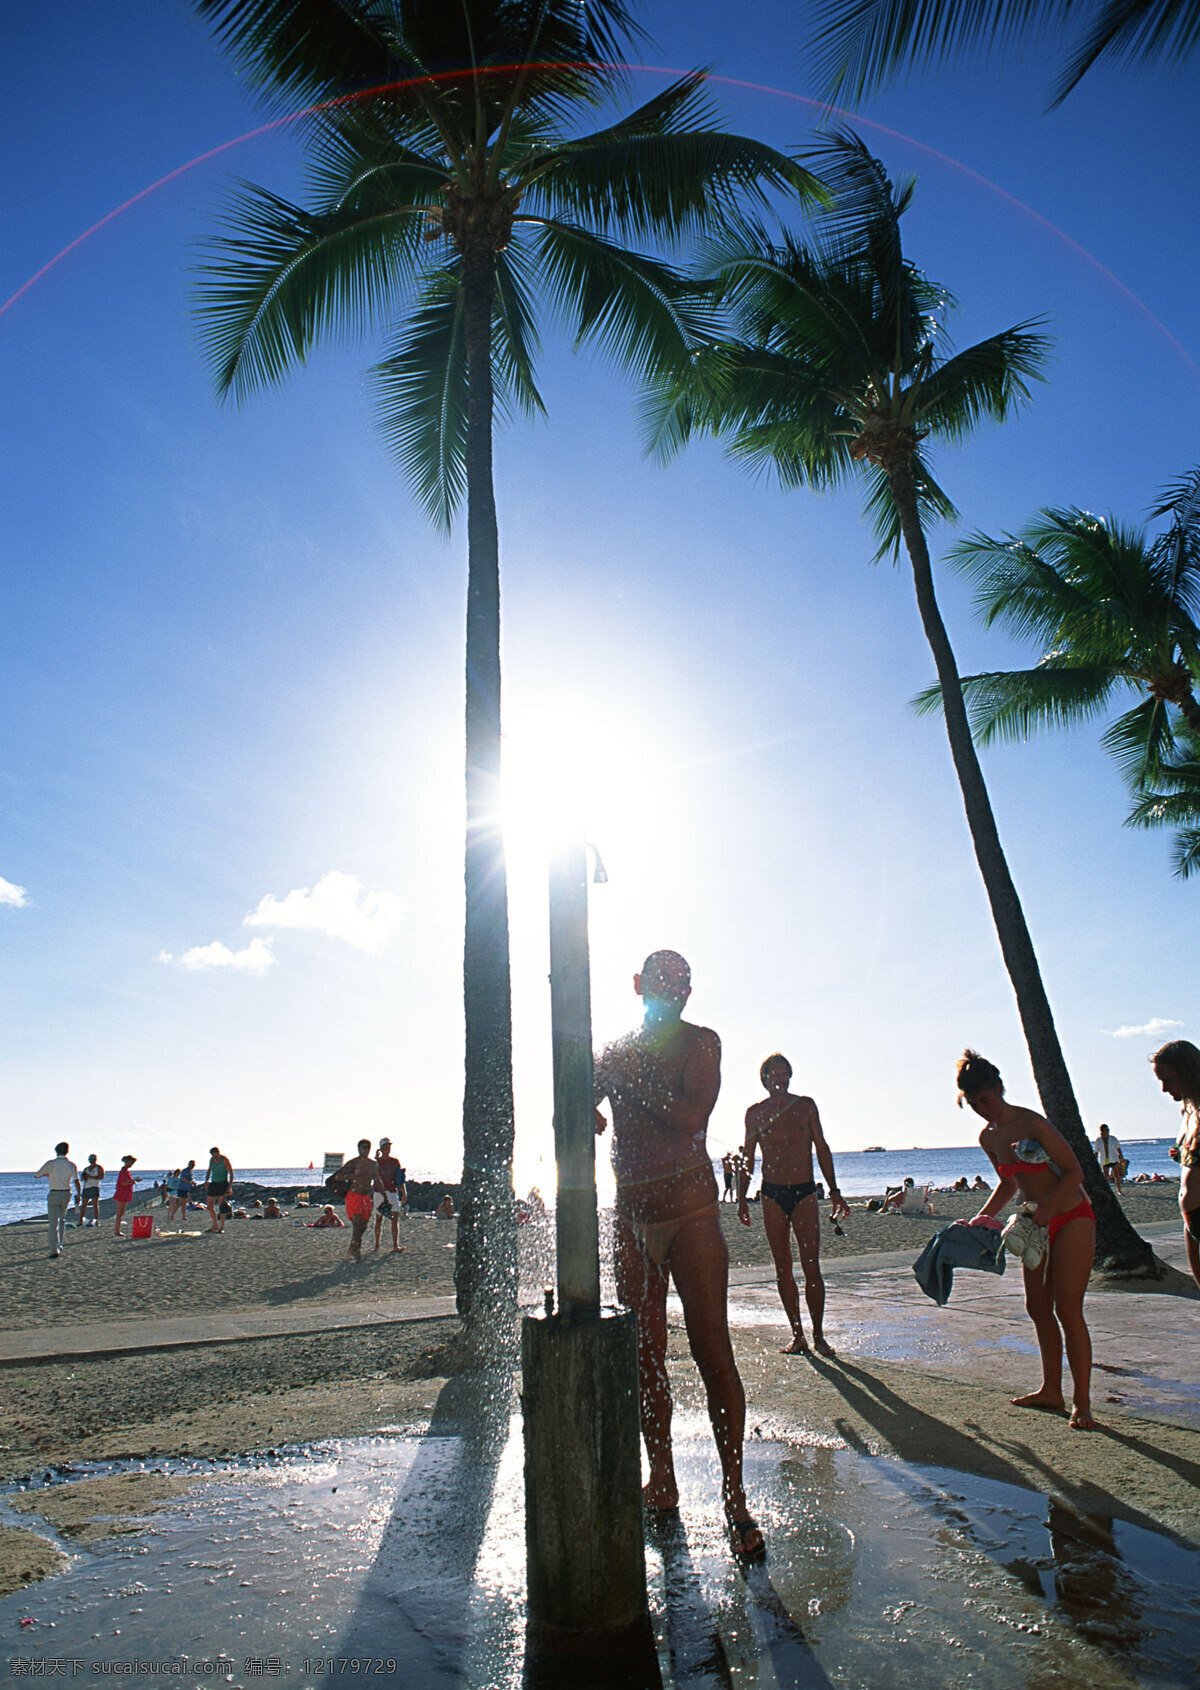 正在 嬉戏 人群 旅游 风景区 夏威夷 夏威夷风光 悠闲 假日 阳光 玩耍 热带树 大海图片 风景图片